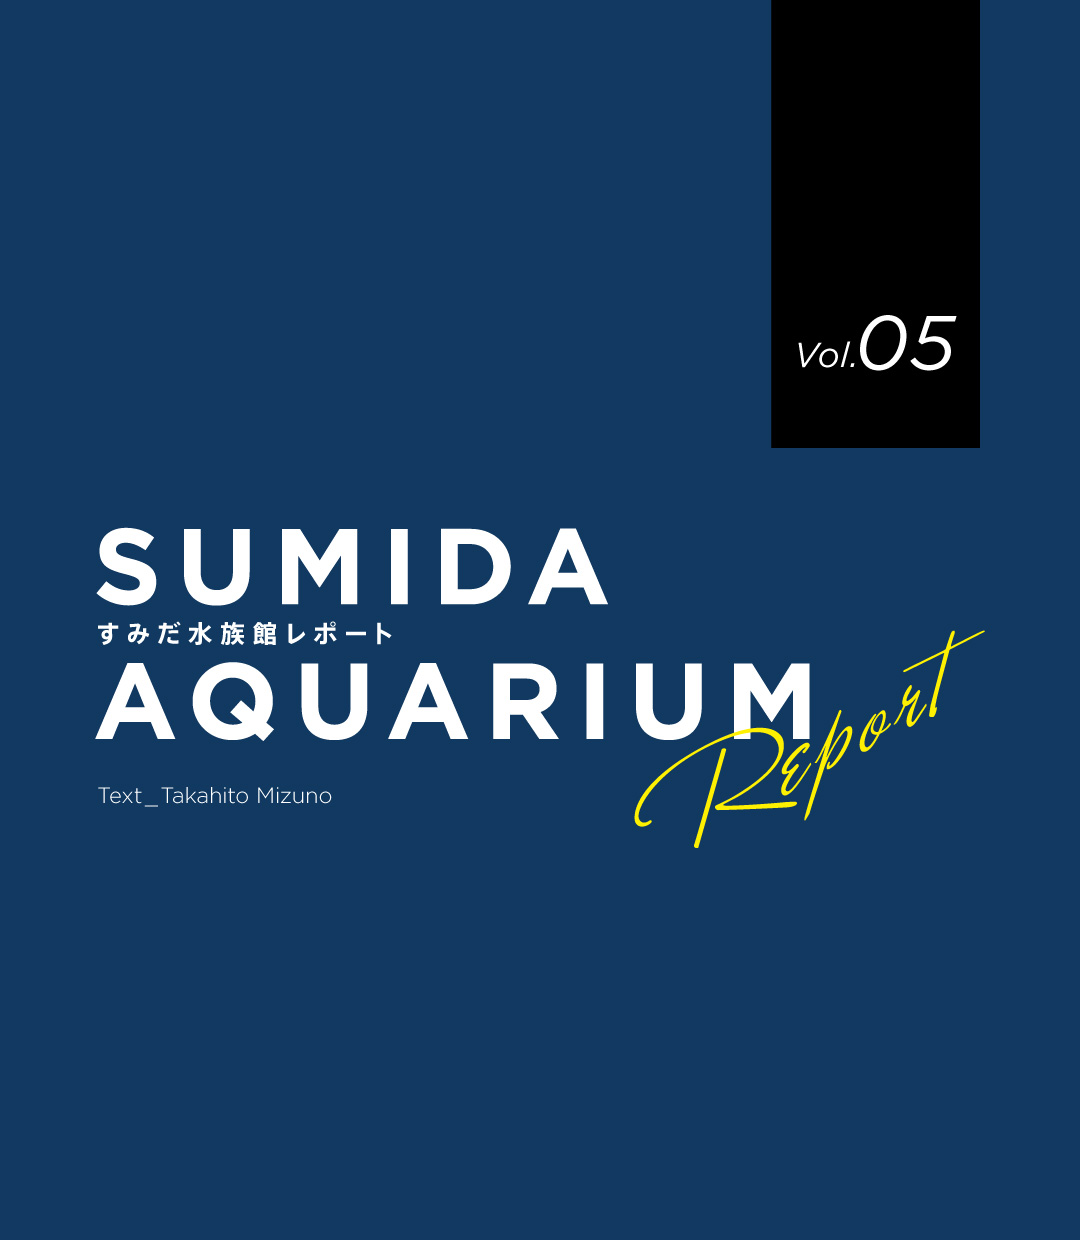 SUMIDA AQUARIUM REPORT Vol.05